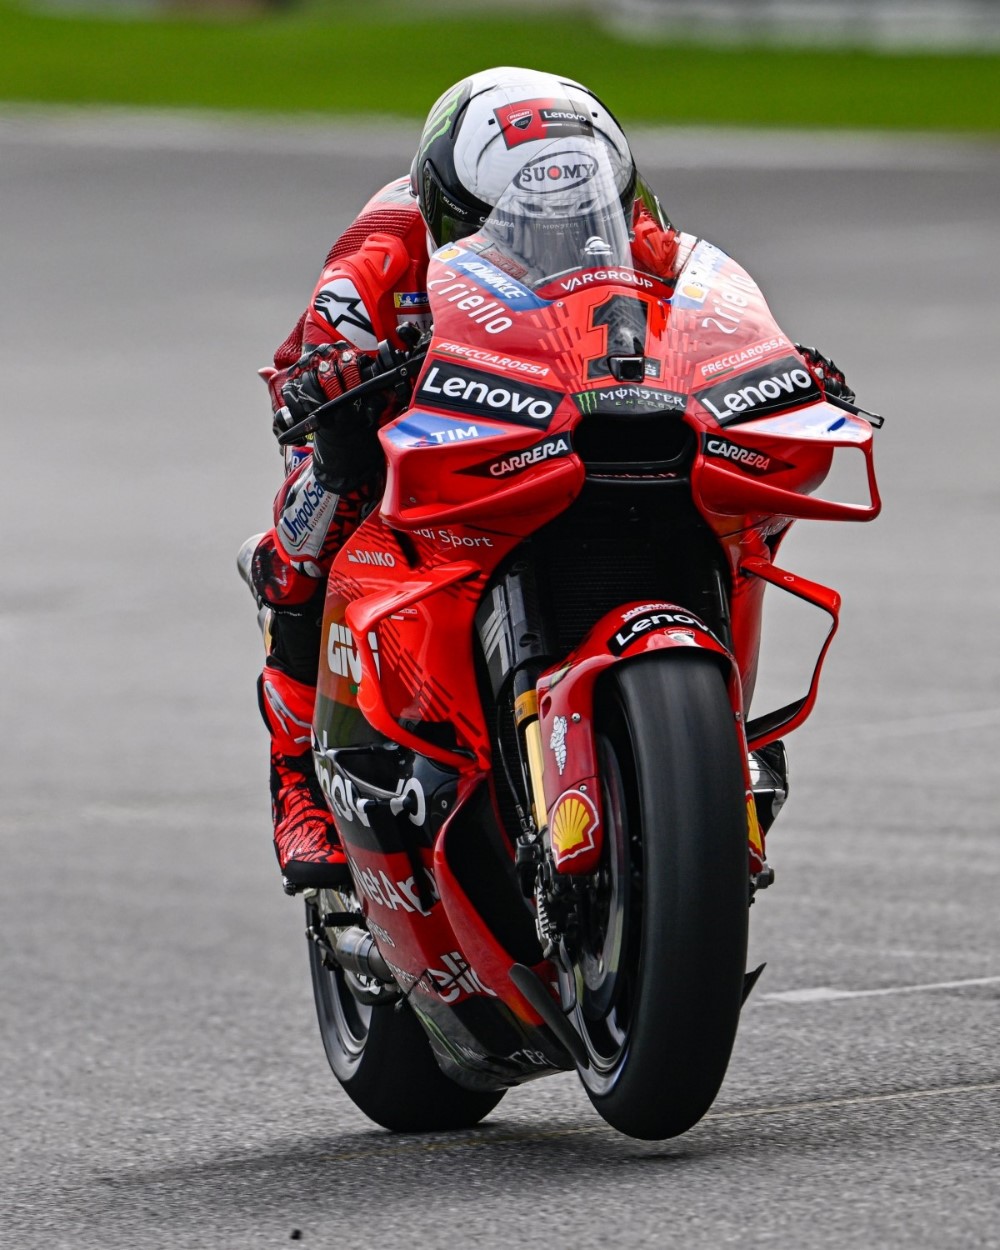 Ducati rider Francesco Bagnaia tops Sepang preseason test